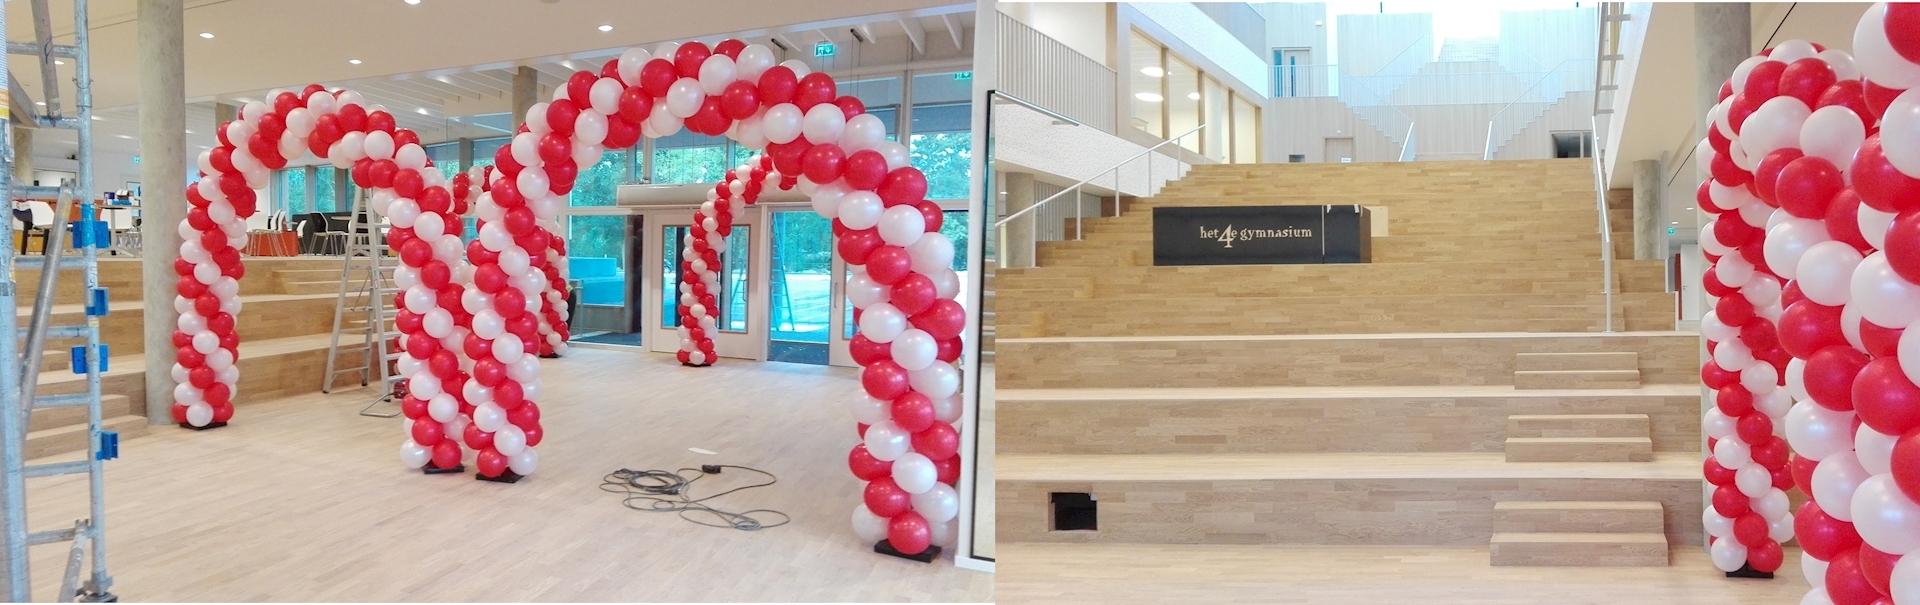 ballonnen bogen rood met wit opening school amsterdam 4e gymnasium